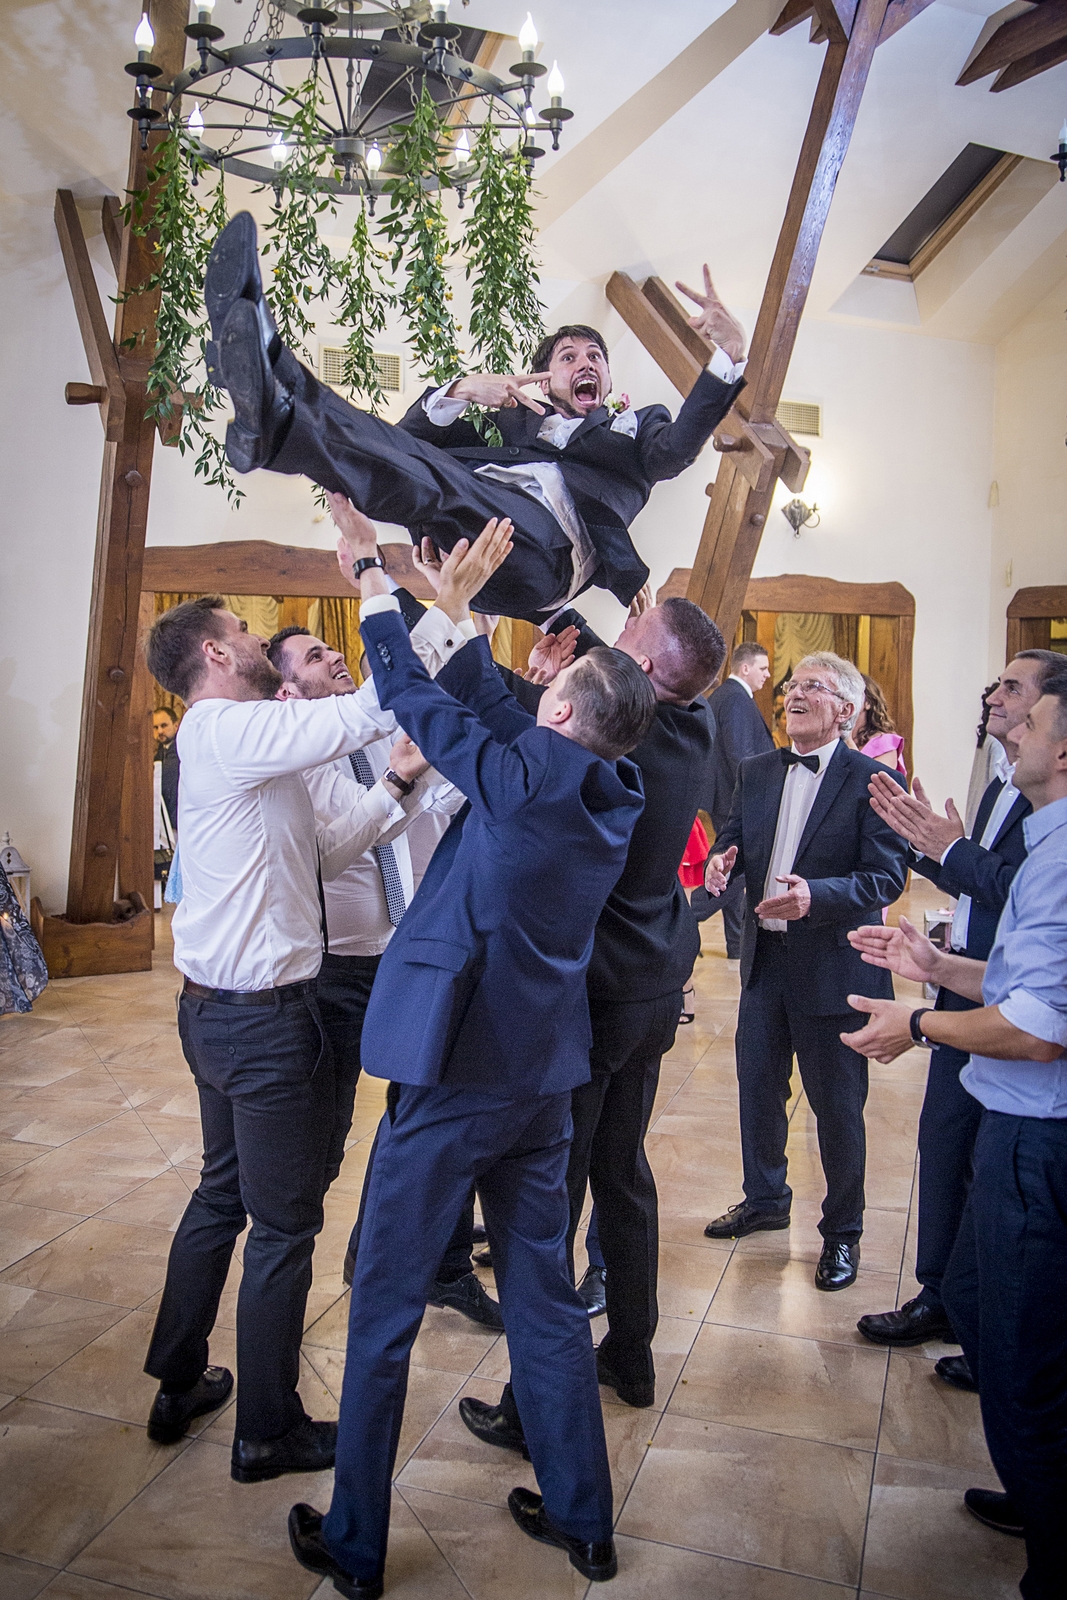 Warszawski fotograf śłubny wykonuje sesjie zdjęciową na weselu w trakcie zabawy